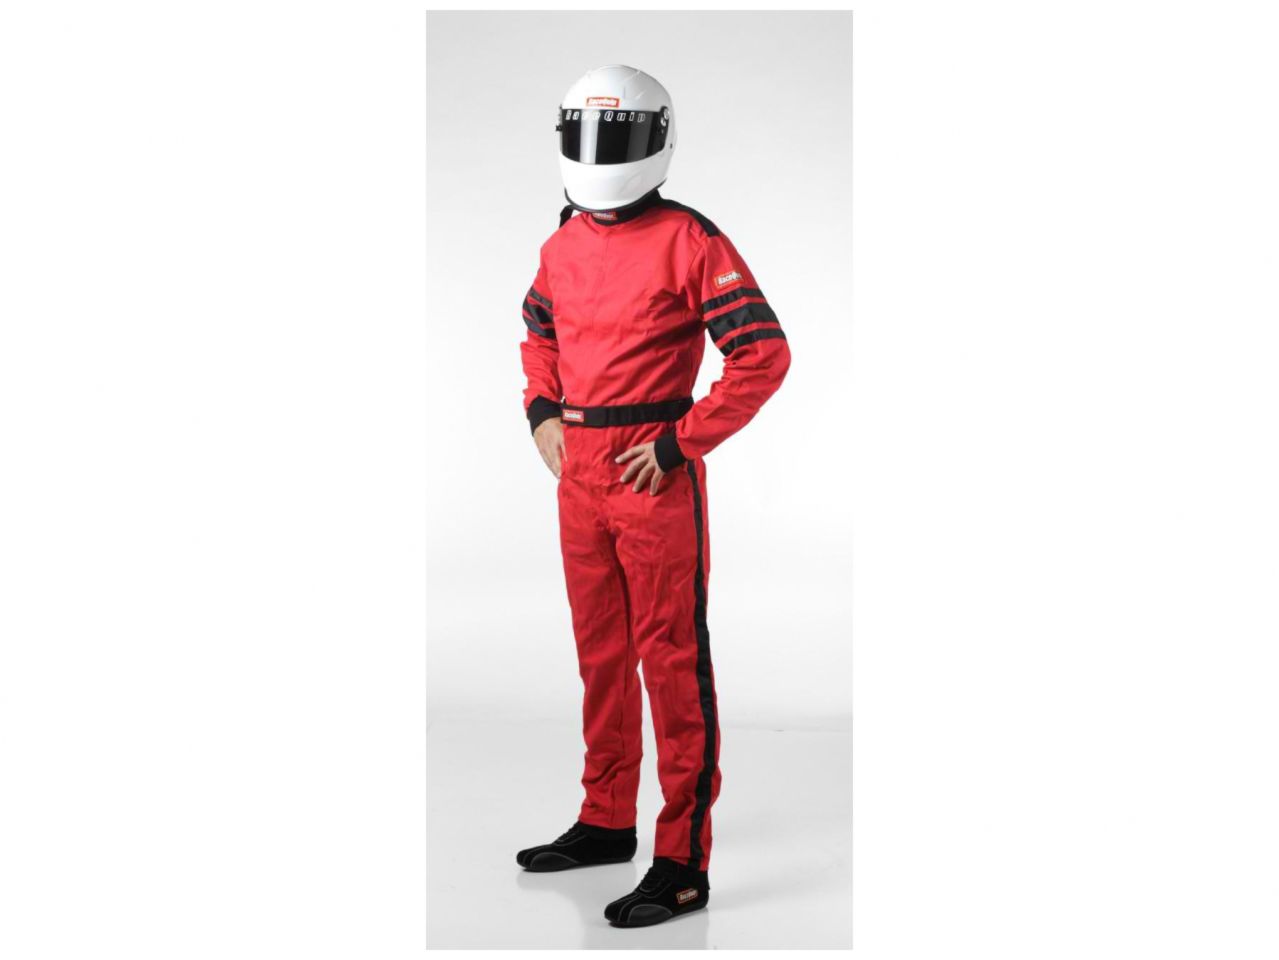 Racequip Suits 110016 Item Image